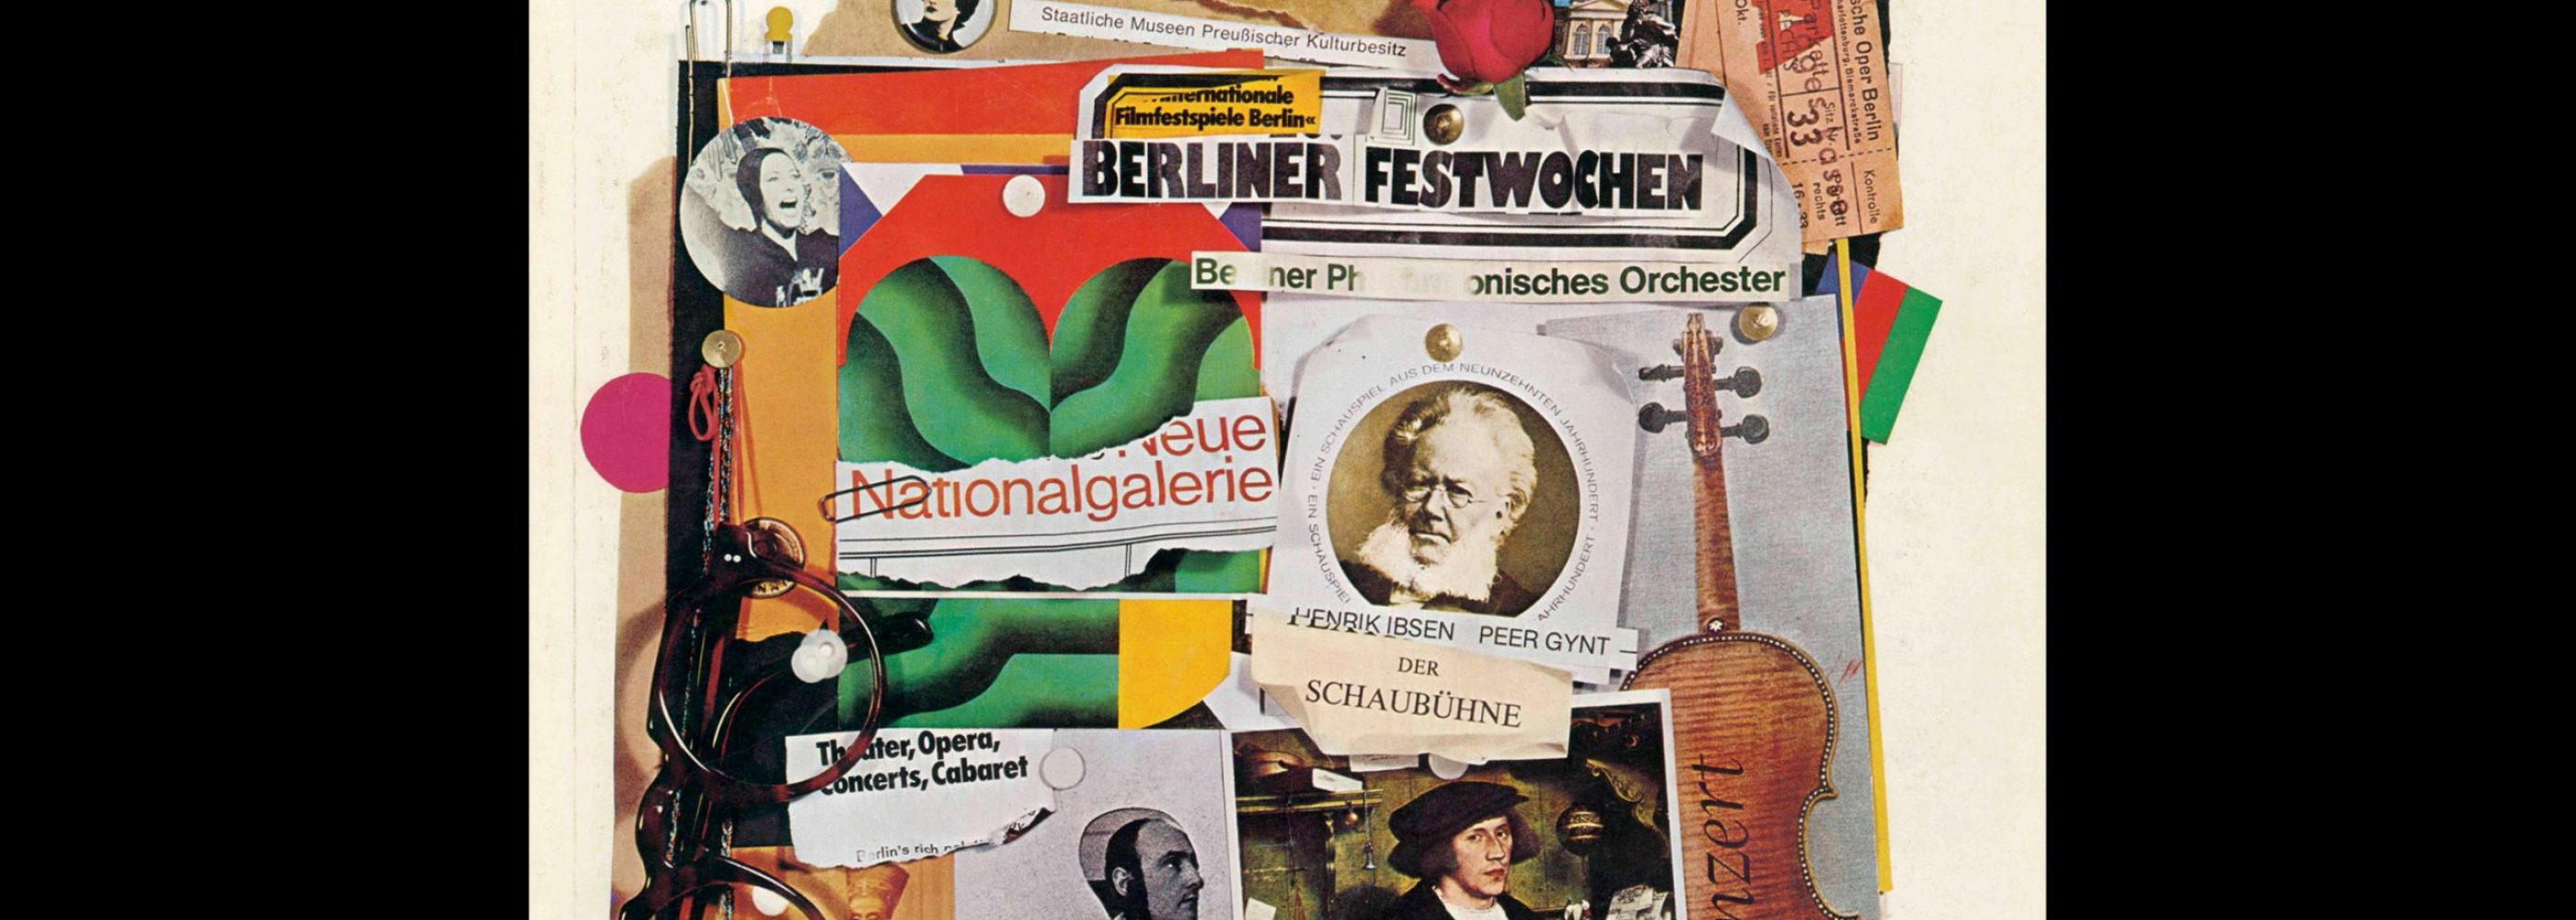 Novum Gebrauchsgraphik, 4, 1977. Cover design by Jürgen Spohn